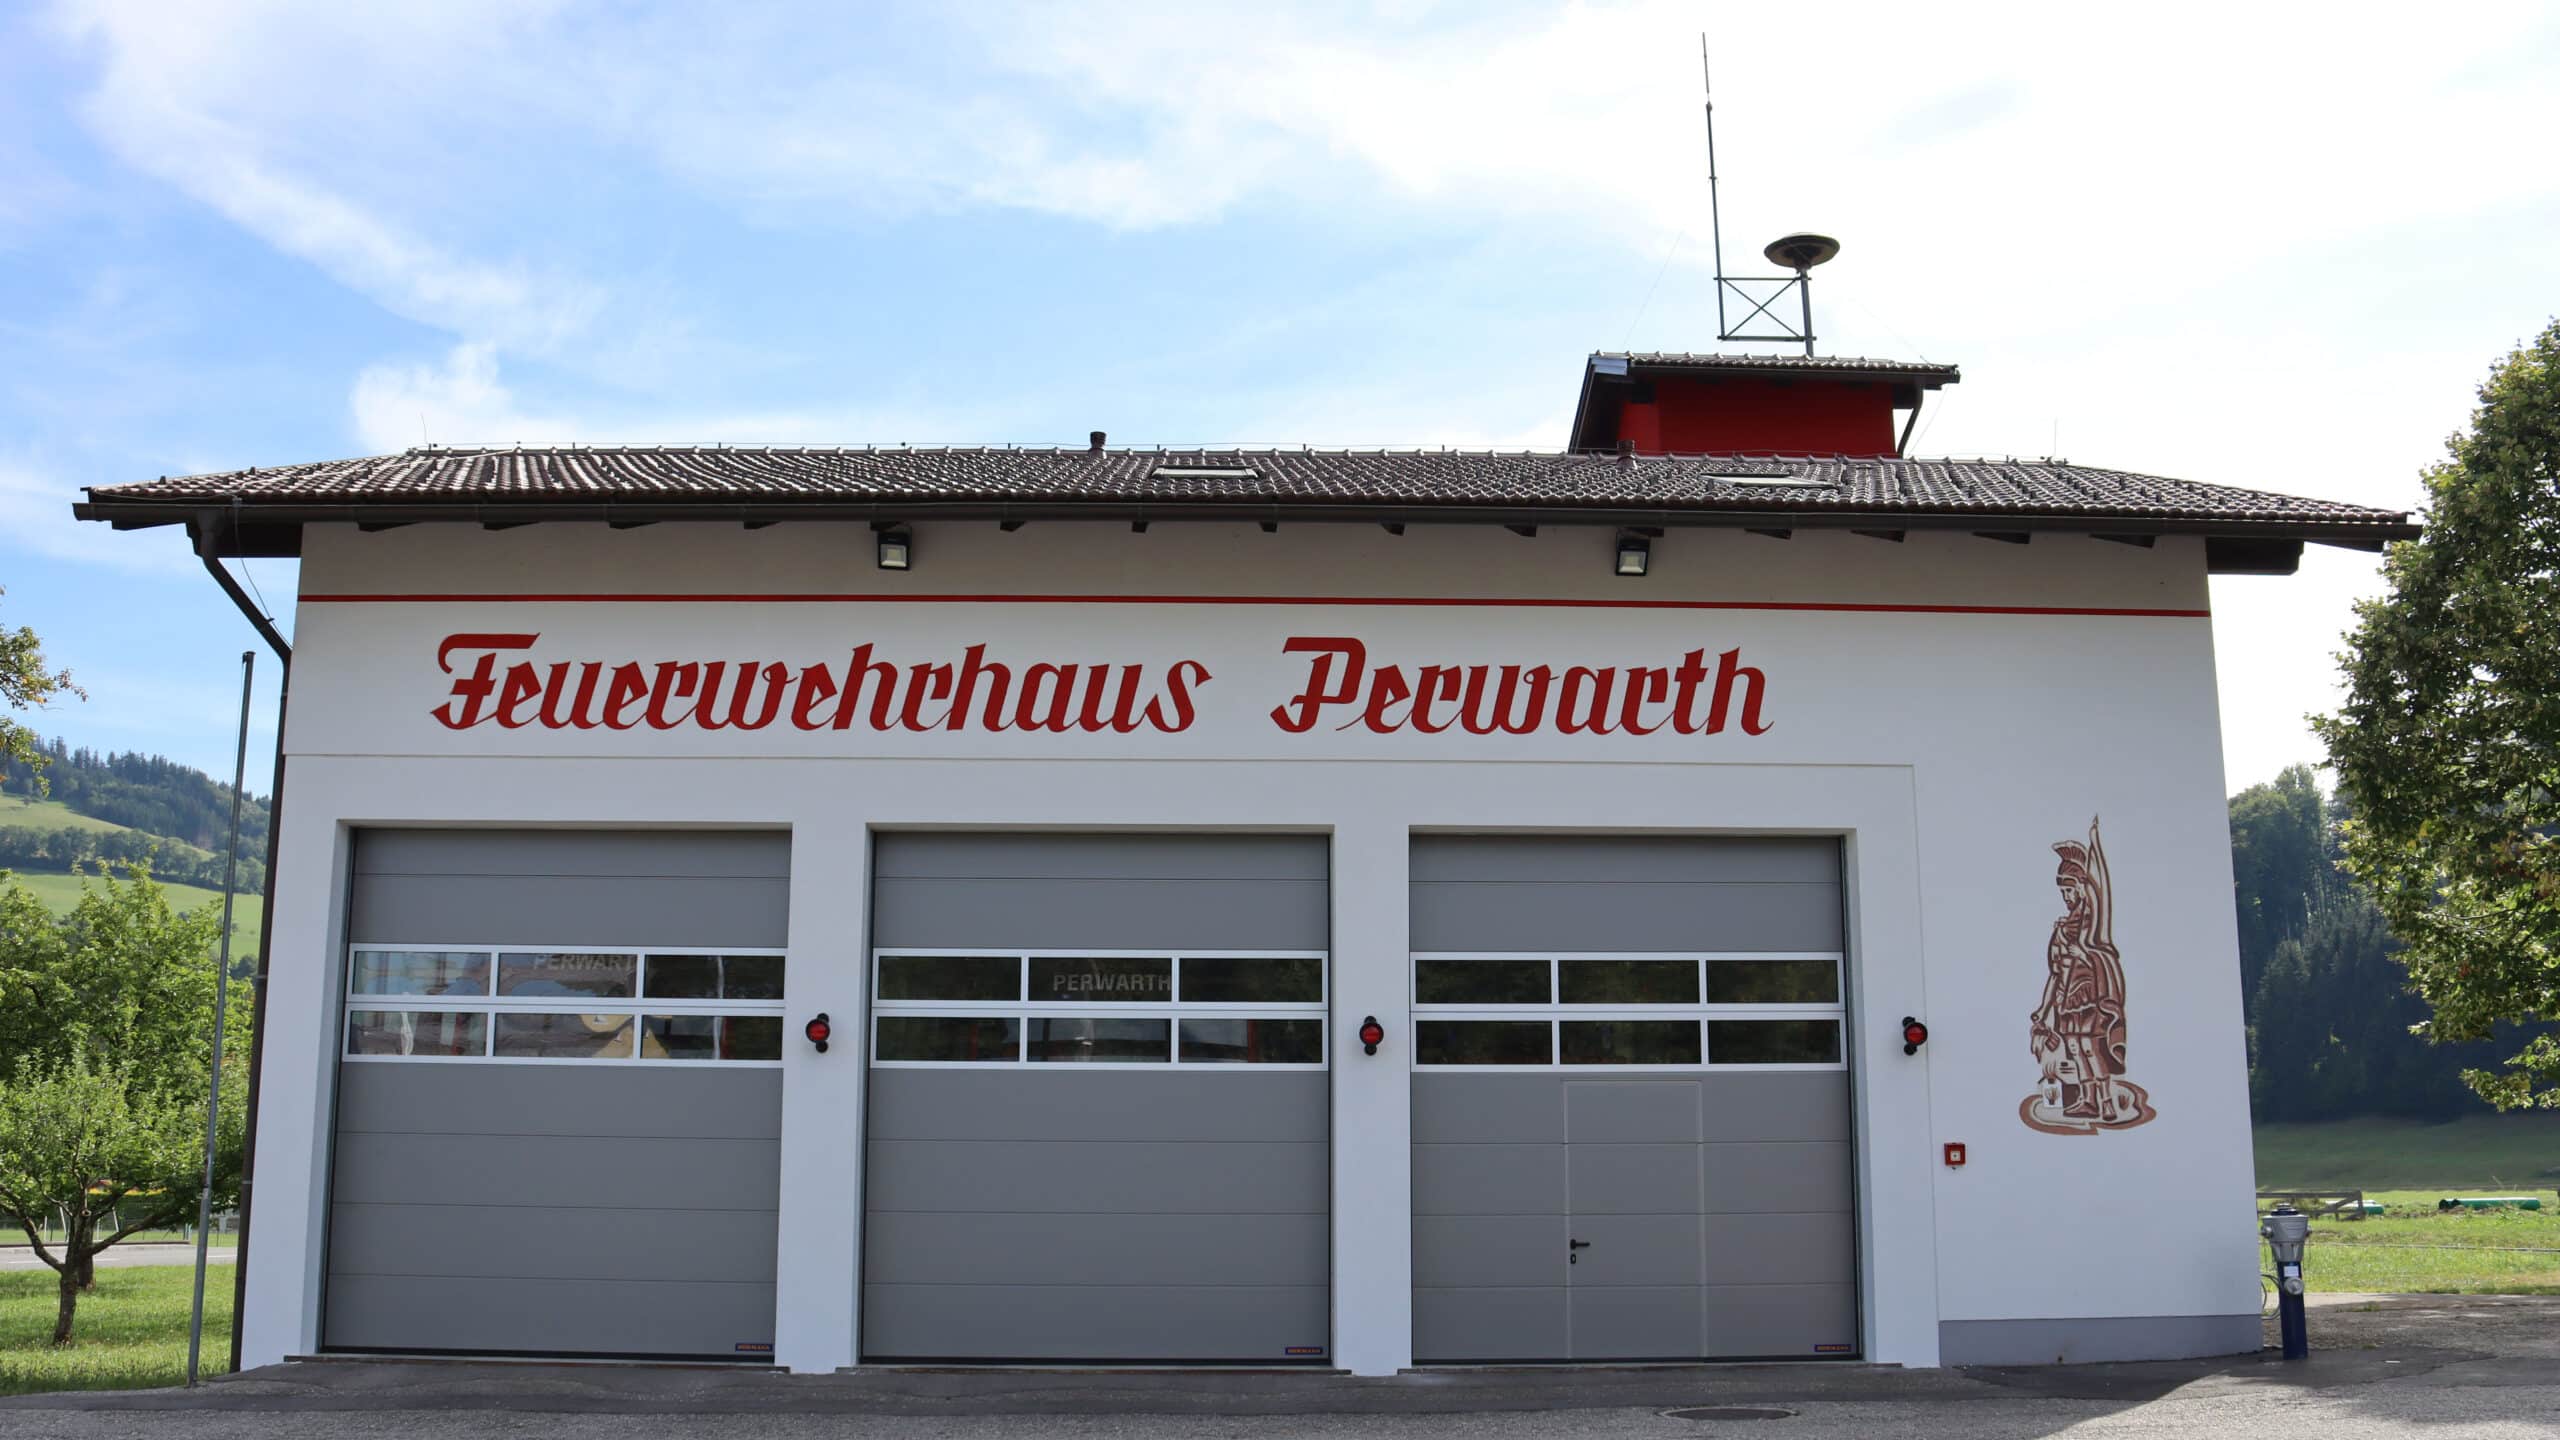 Freiwillige Feuerwehr Perwarth